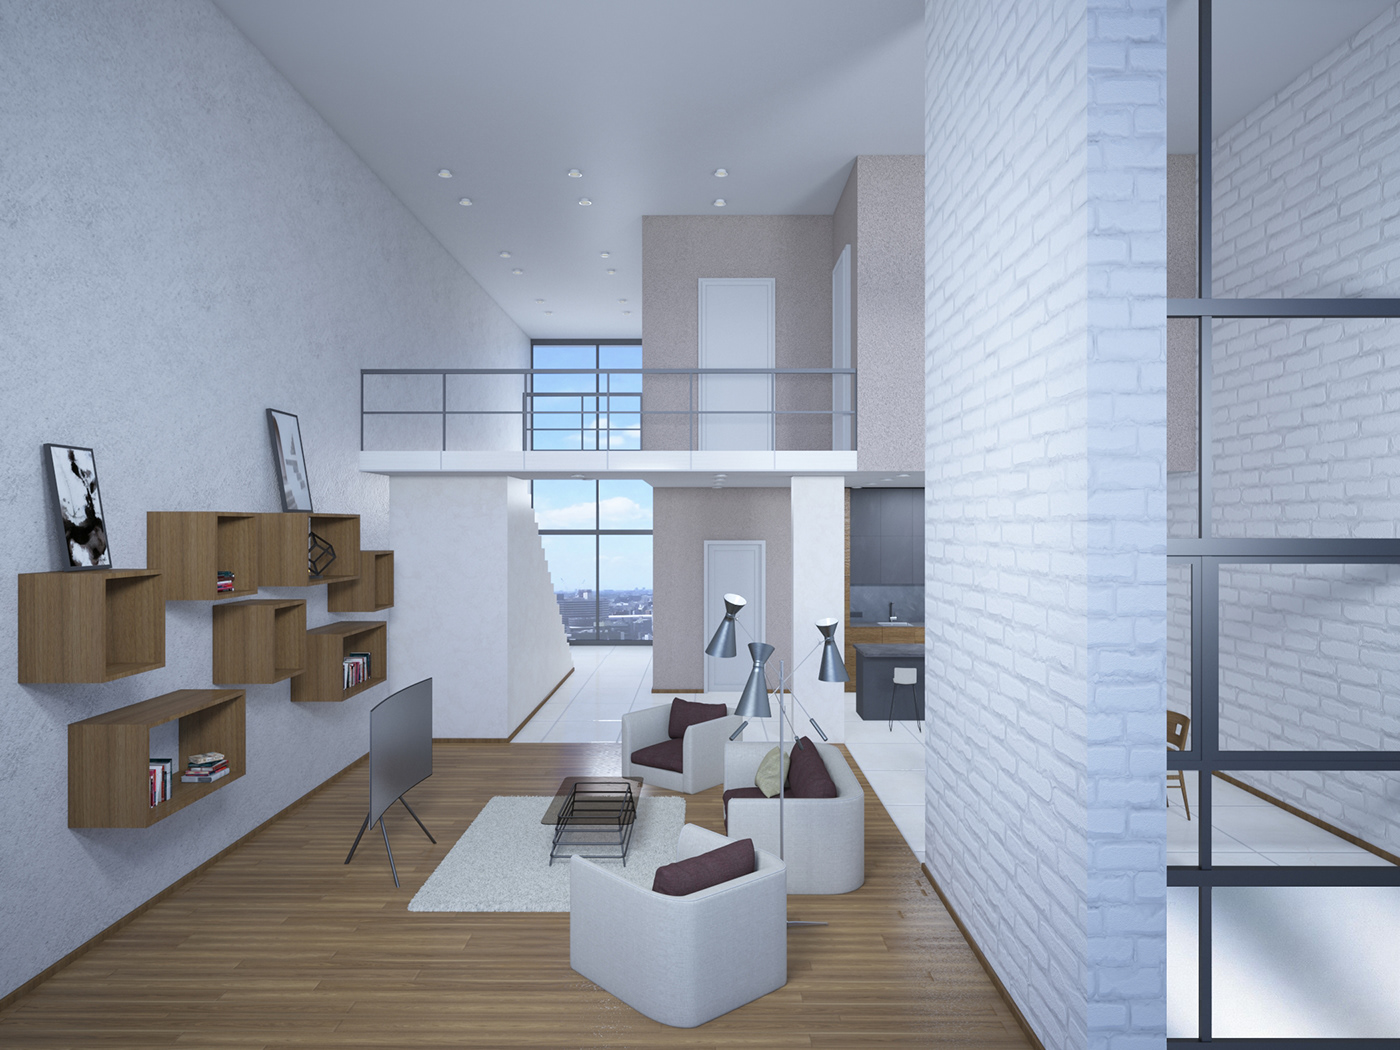 3DDesign 3drendering 3dsmax 3dvisualization interiordesign maisonette nightrender Residentalbuilding skyscraperarchitecture vray